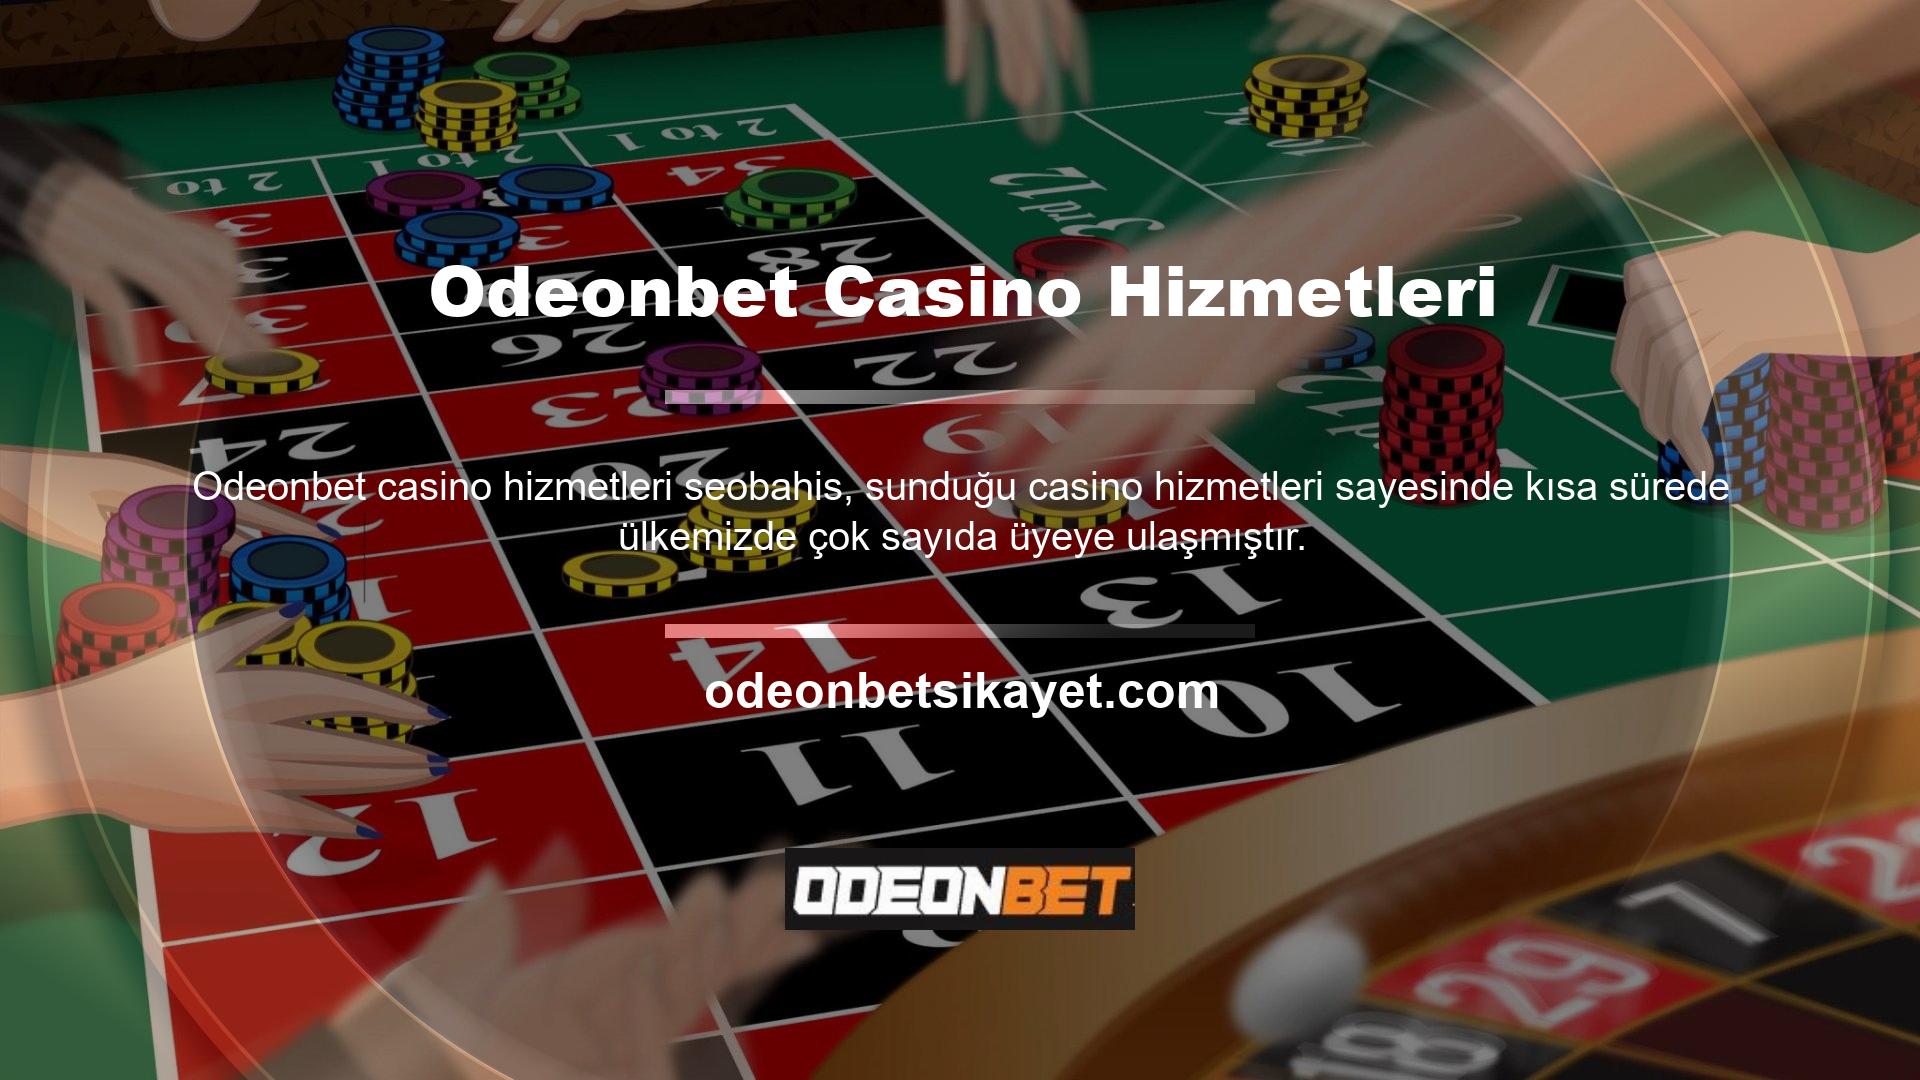 Odeonbet casino altyapısı için Canlı Bahis Ofisi çeşitli proje firmaları ile anlaşmalar yapmıştır